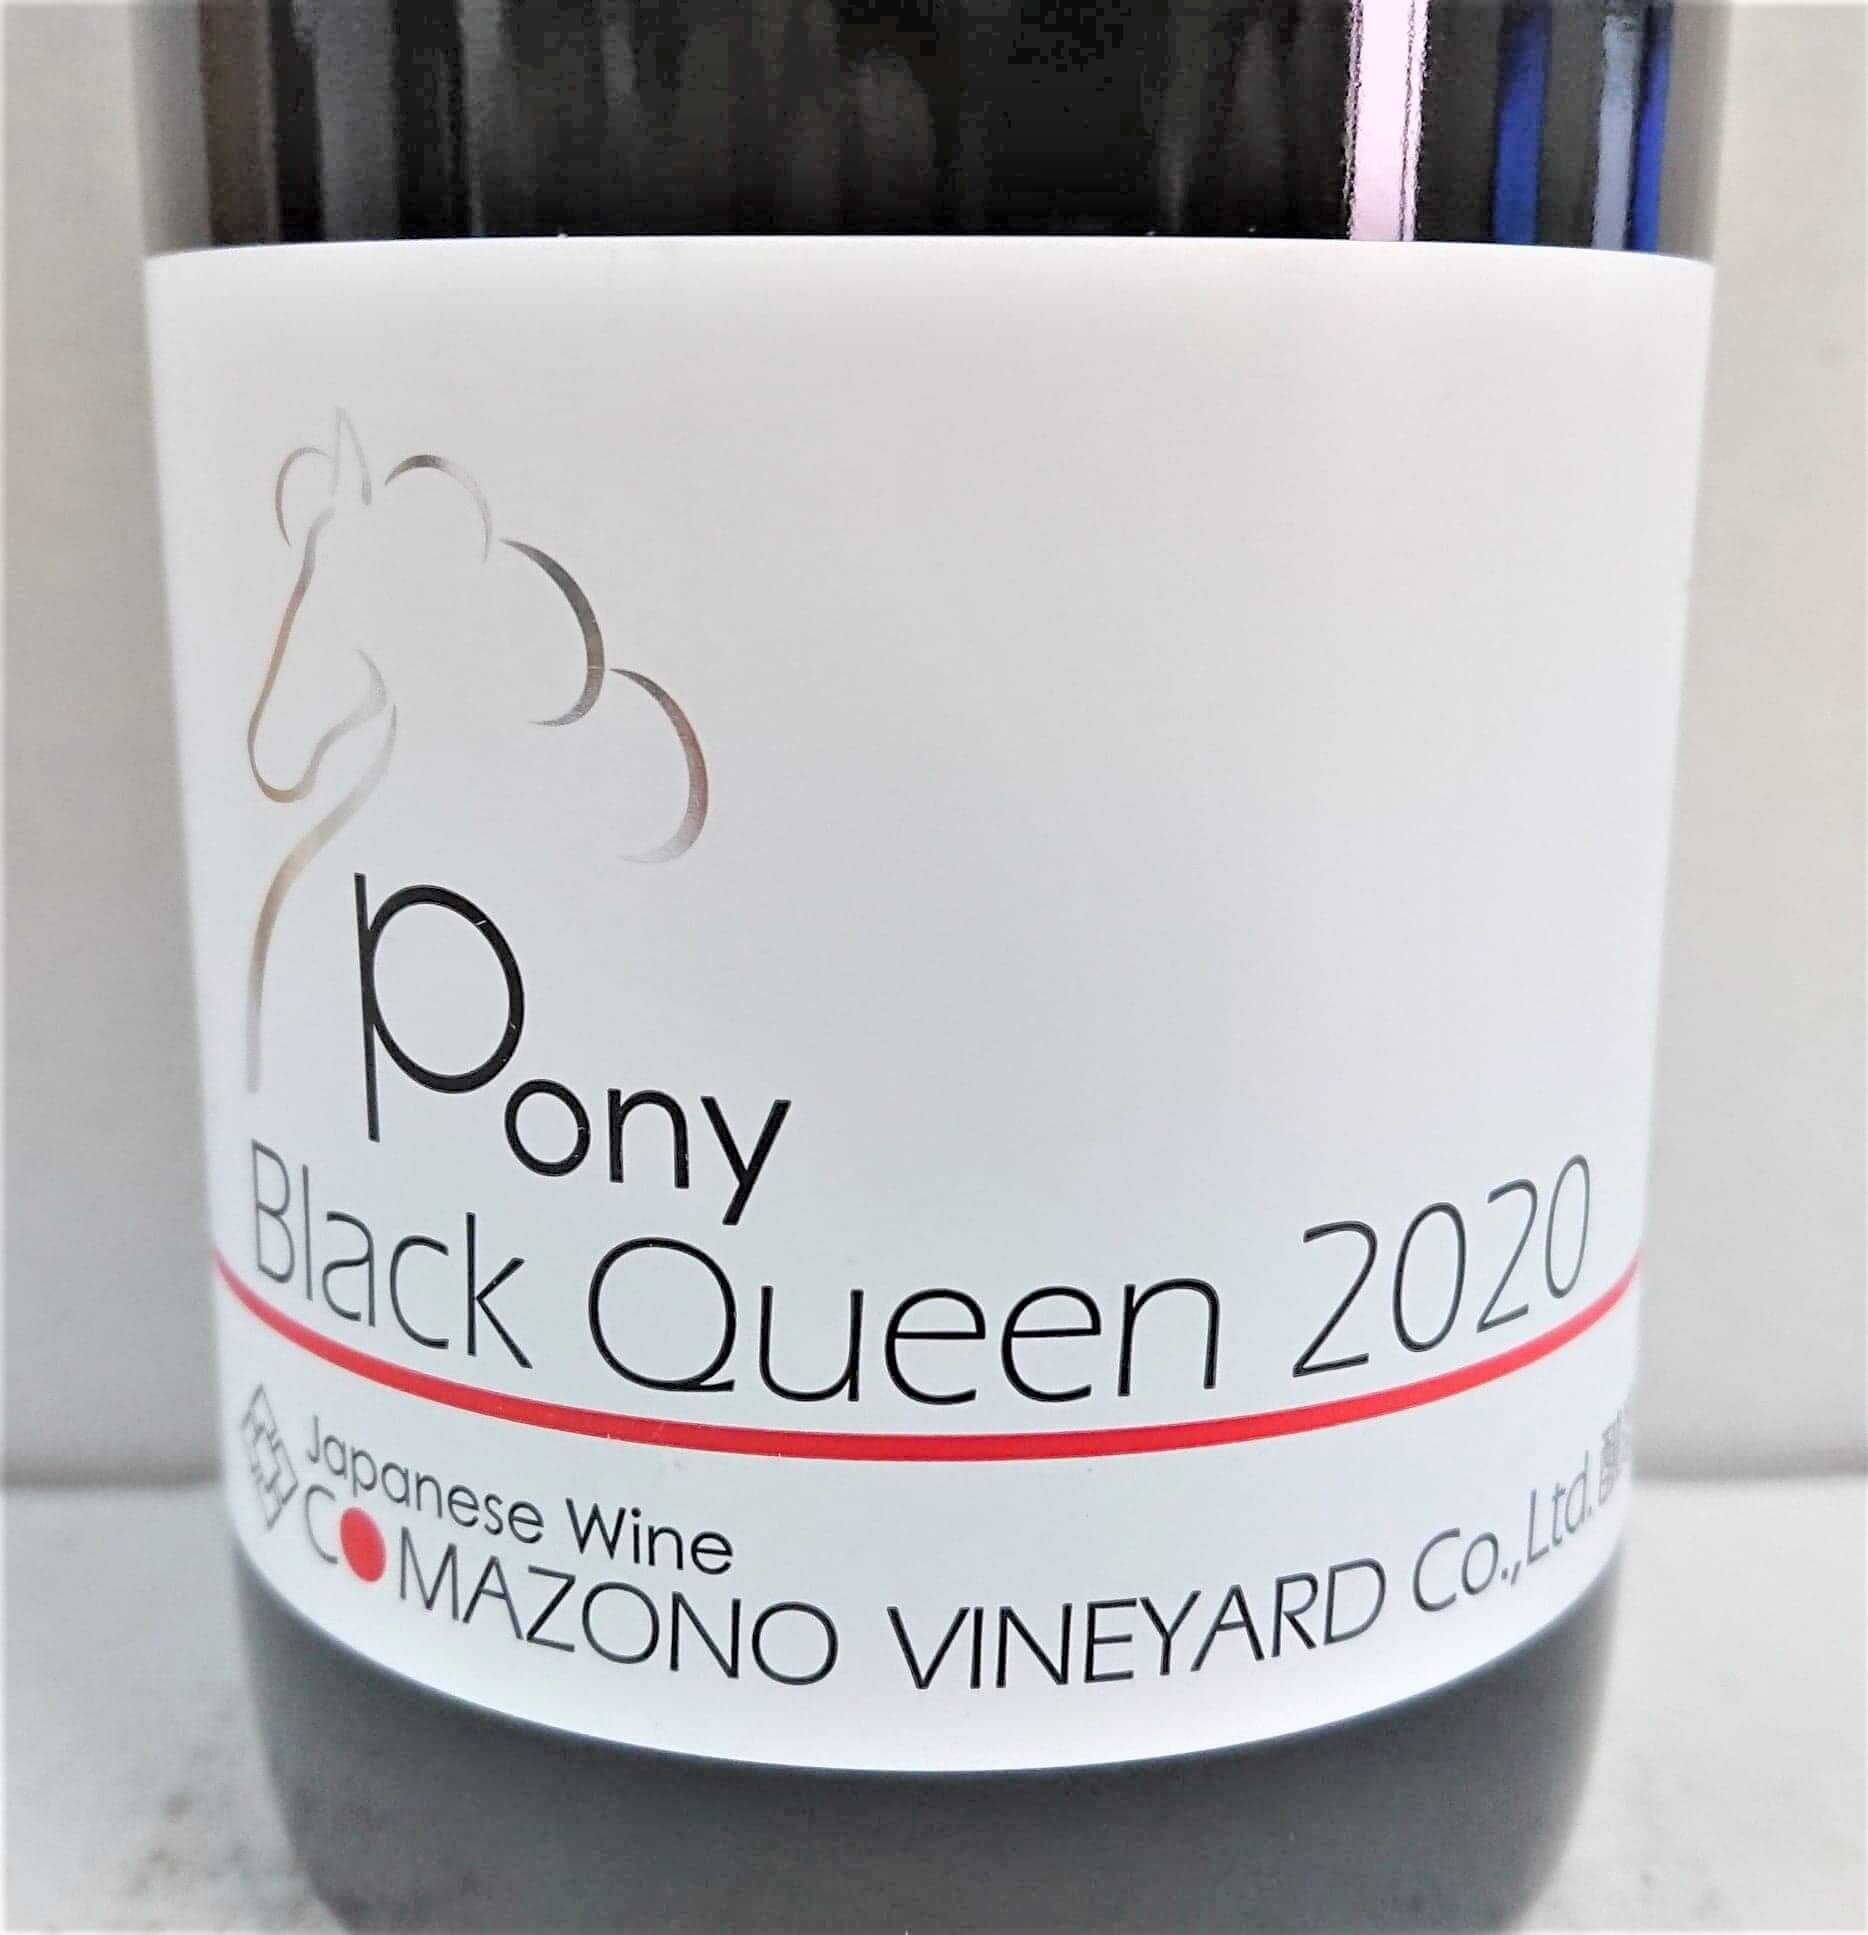 comazono-vineyard-pony-black-queen